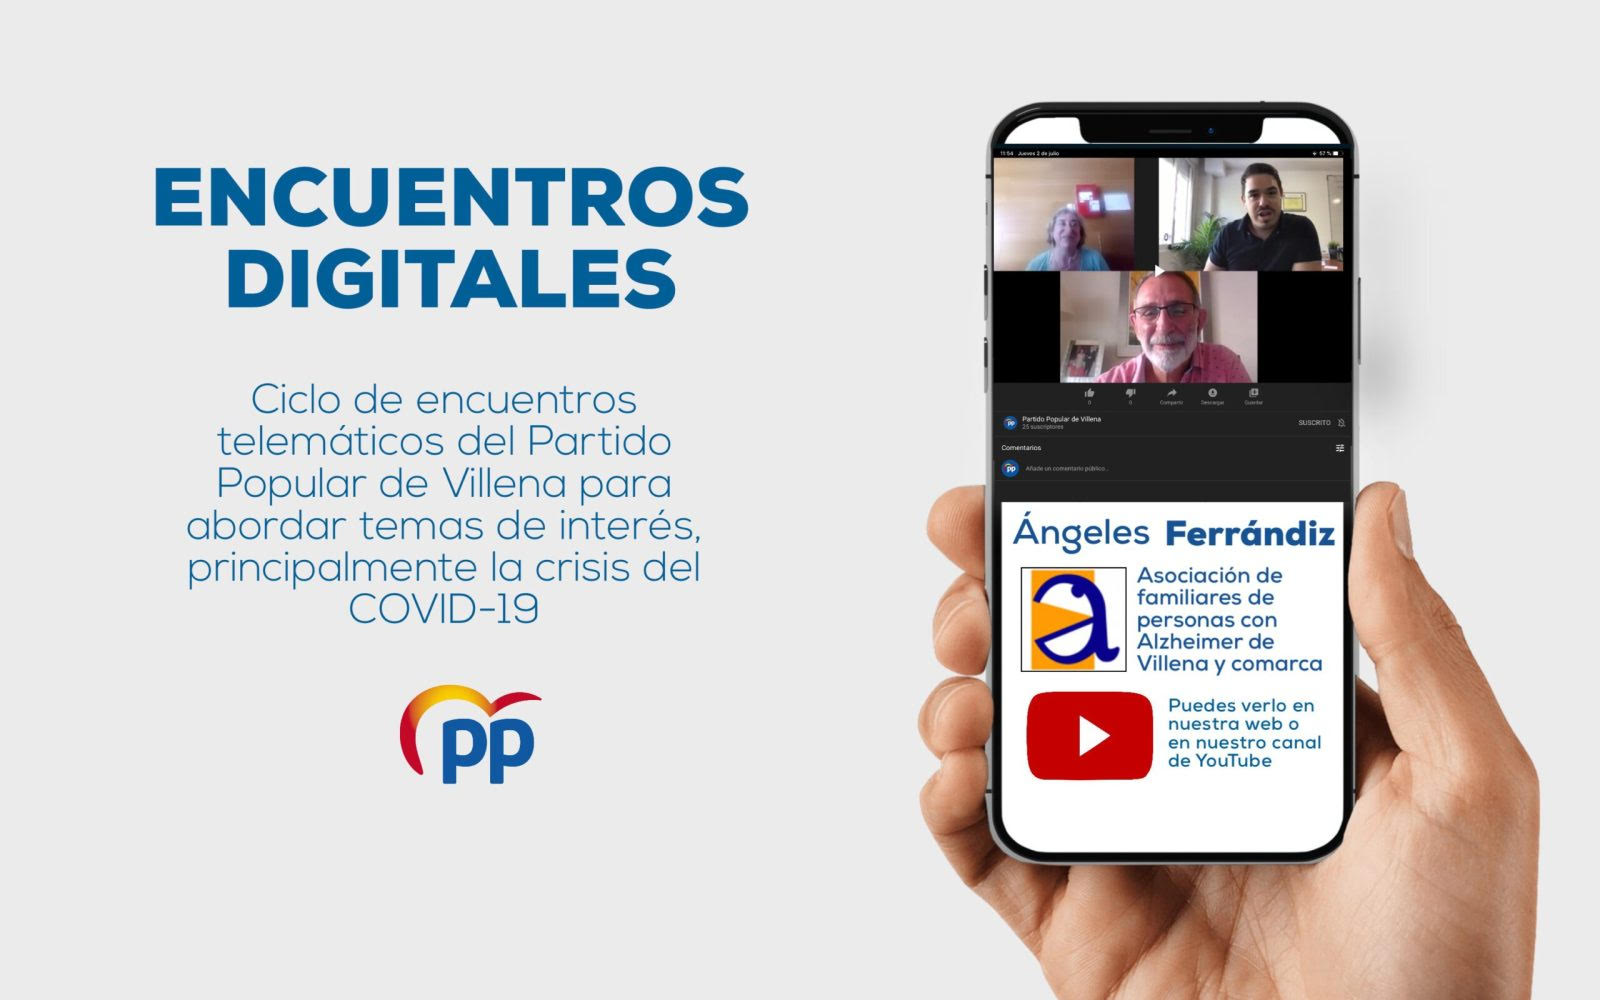 Encuentro Digital con Ángeles Ferrándiz, de la asociación de familiares de personas con Alzheimer de Villena y comarca